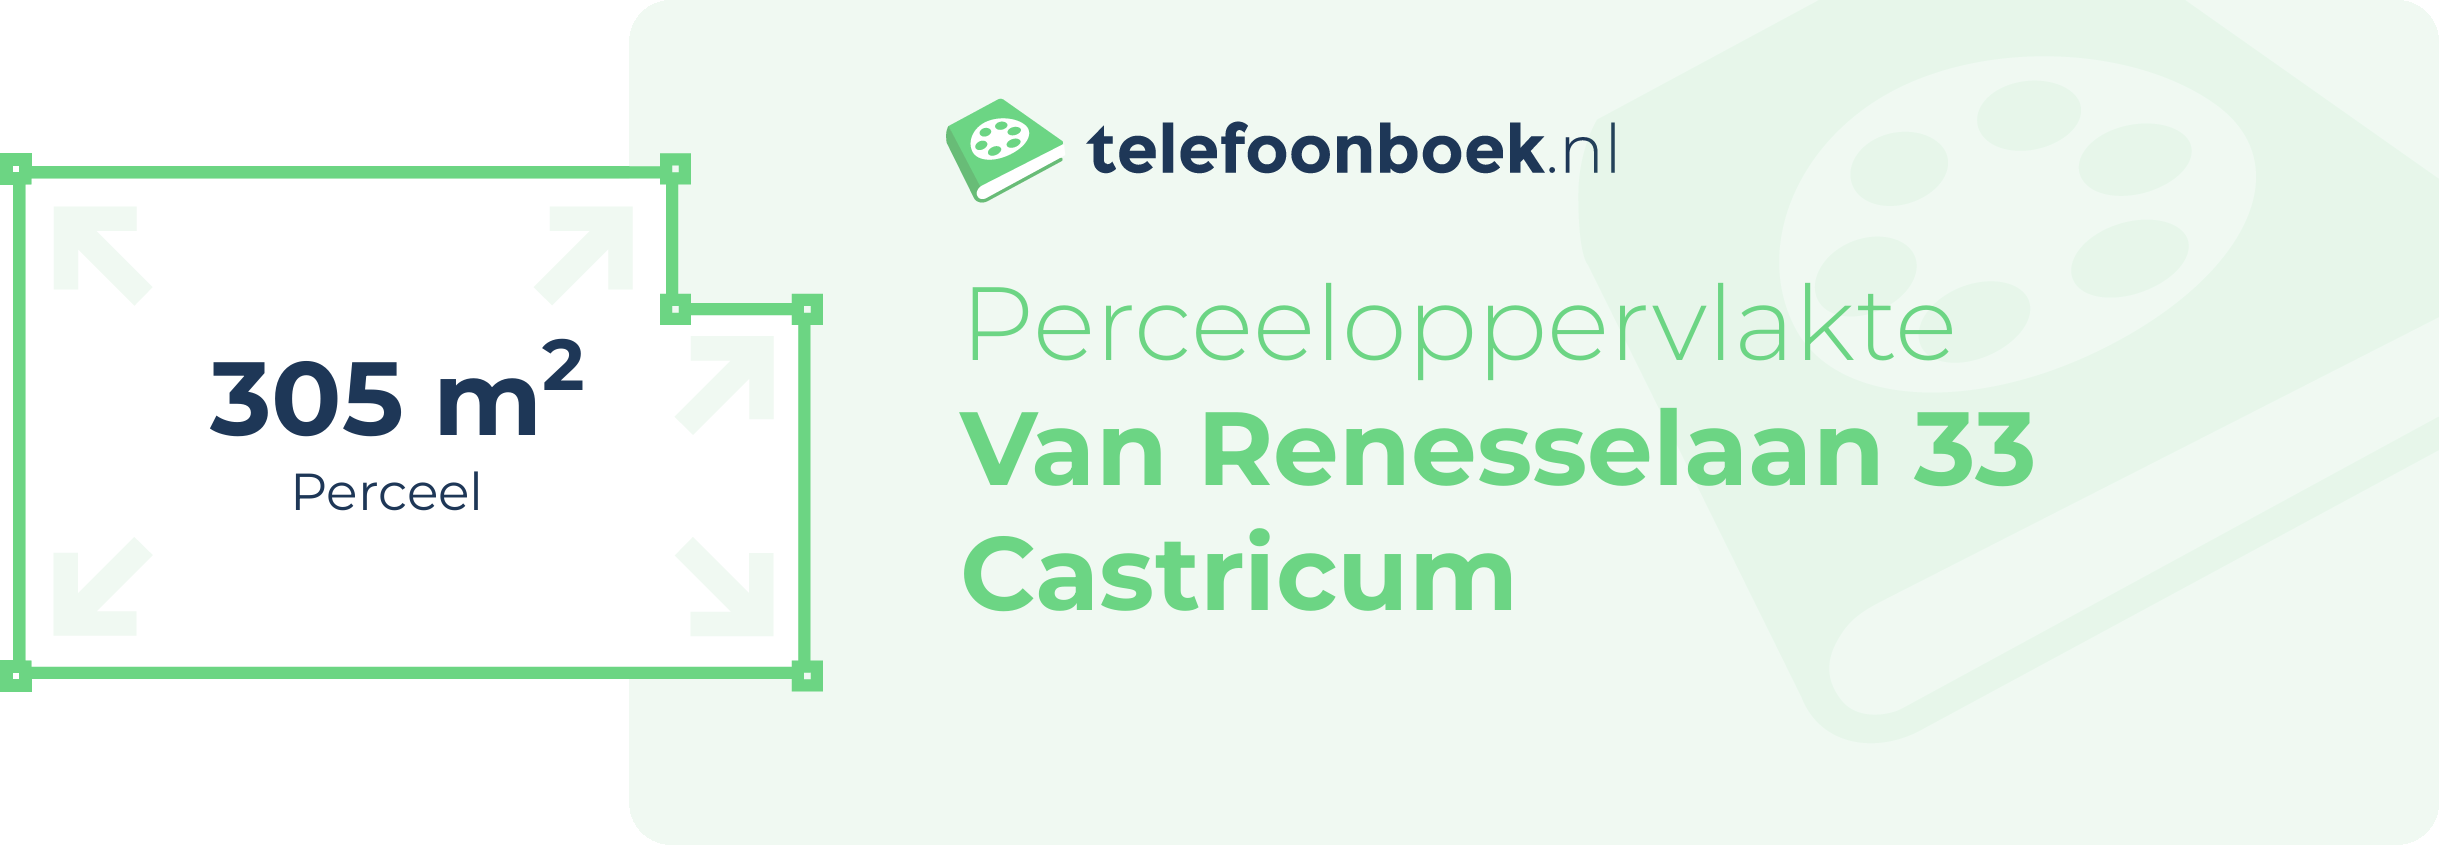 Perceeloppervlakte Van Renesselaan 33 Castricum